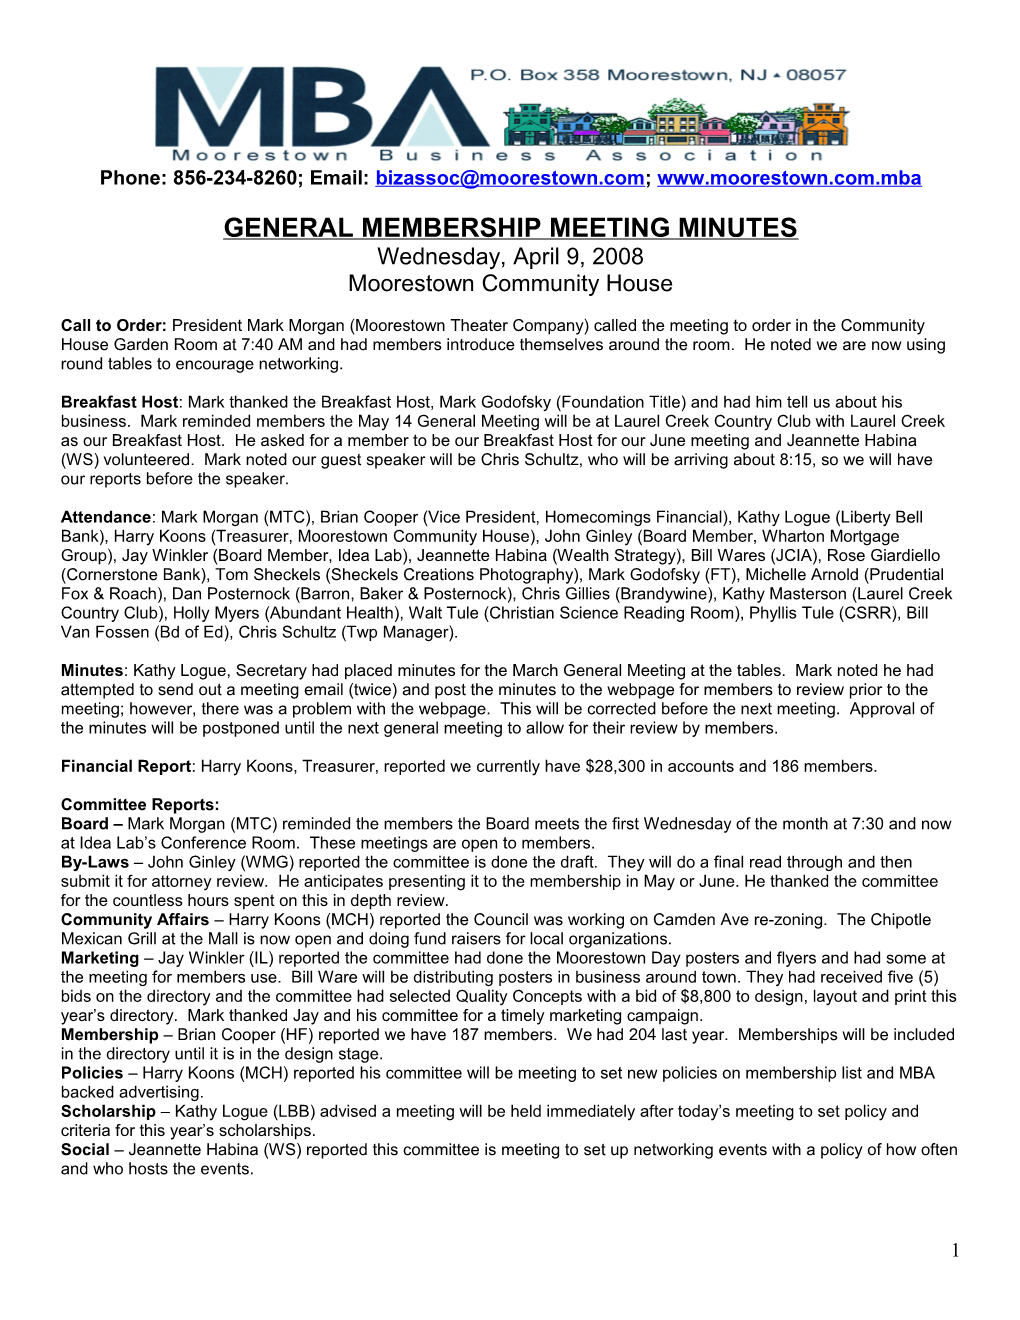 General Membership Meeting Minutes